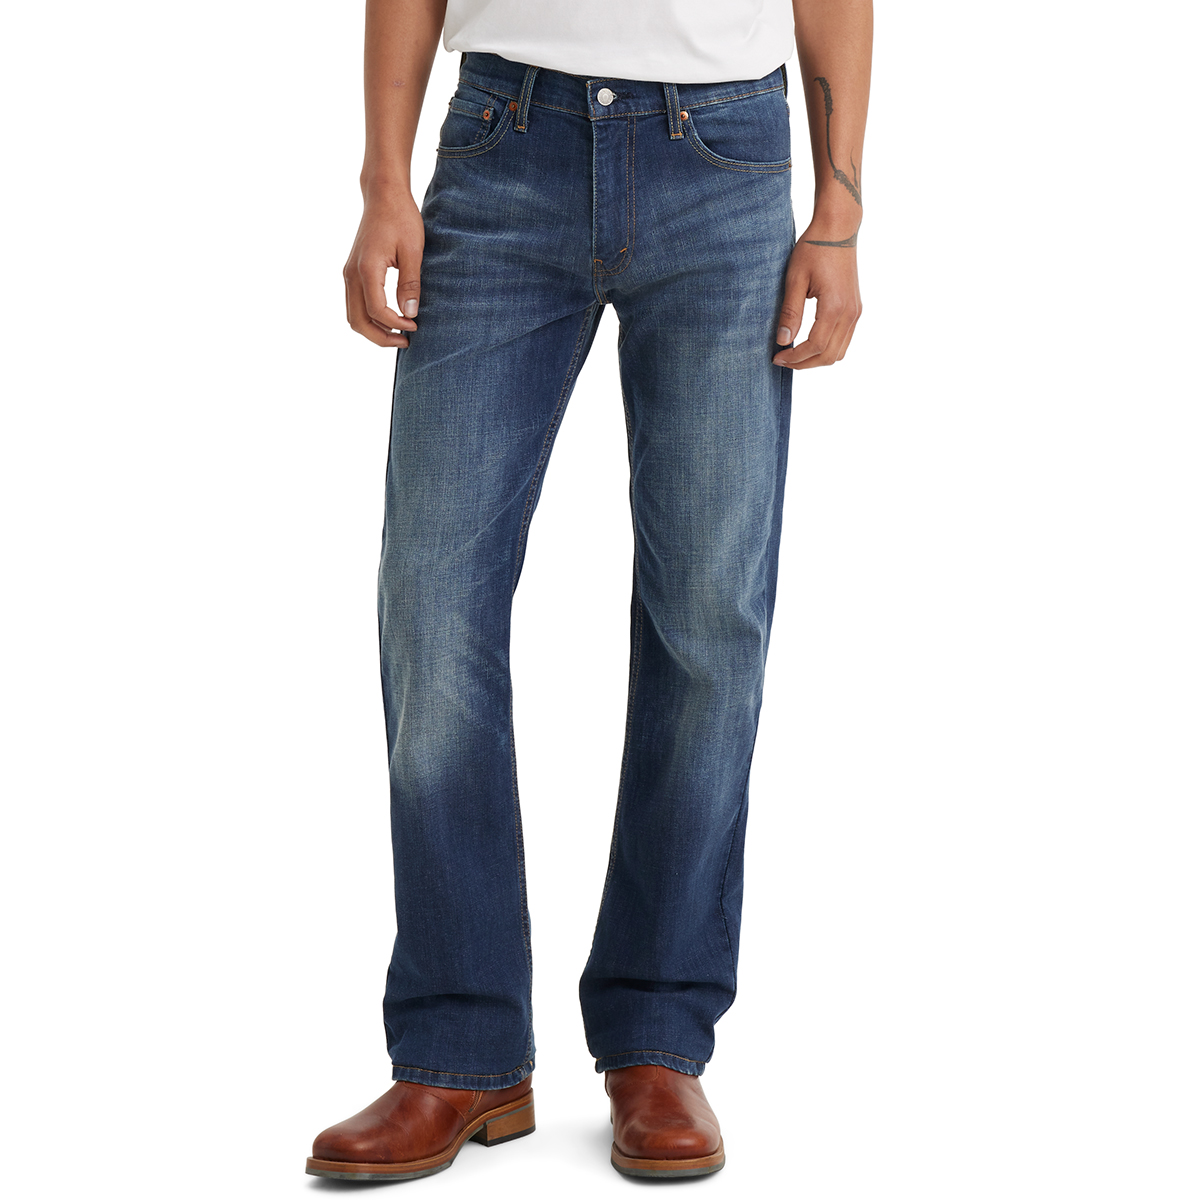 Levi's Men's 527 Slim Bootcut Jeans